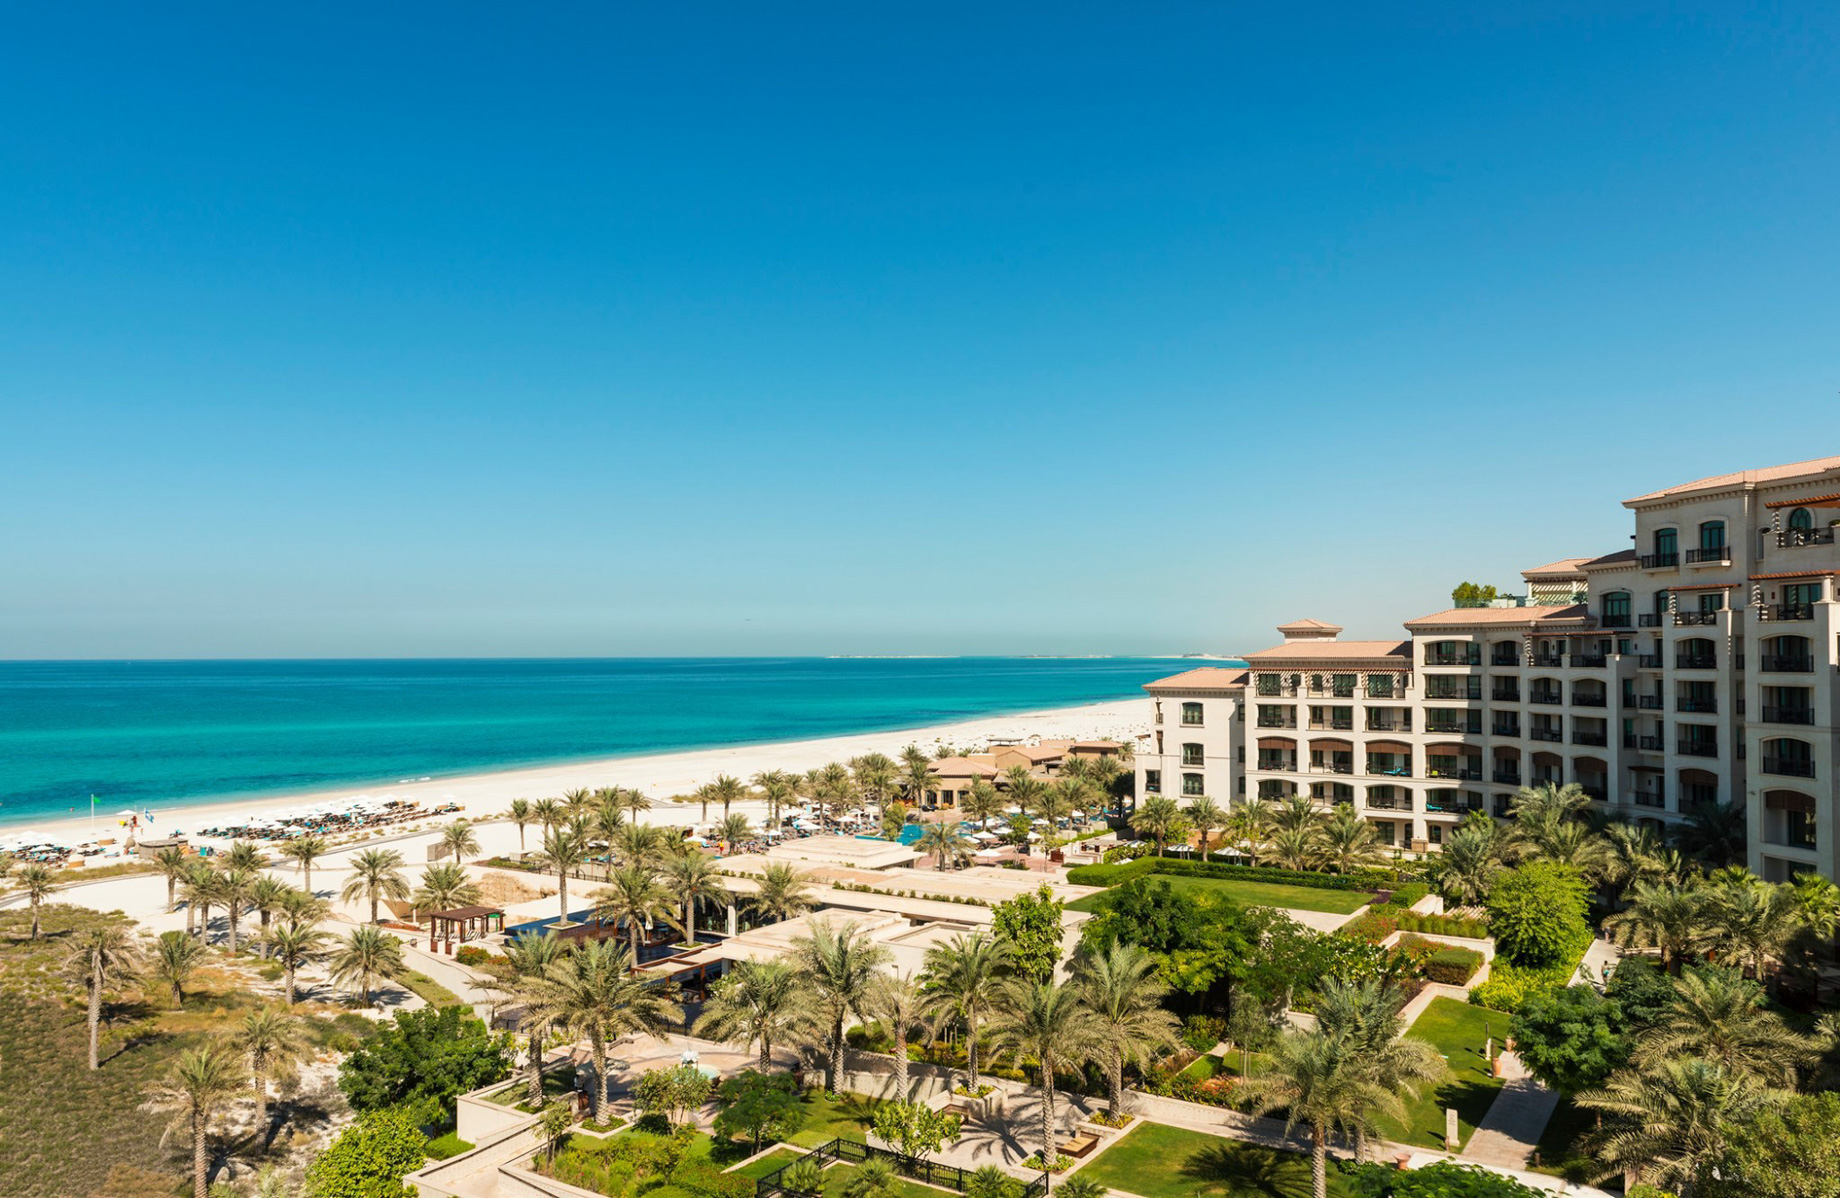 The St. Regis Saadiyat Island Resort – Abu Dhabi, UAE – Resort Beach View Aerial